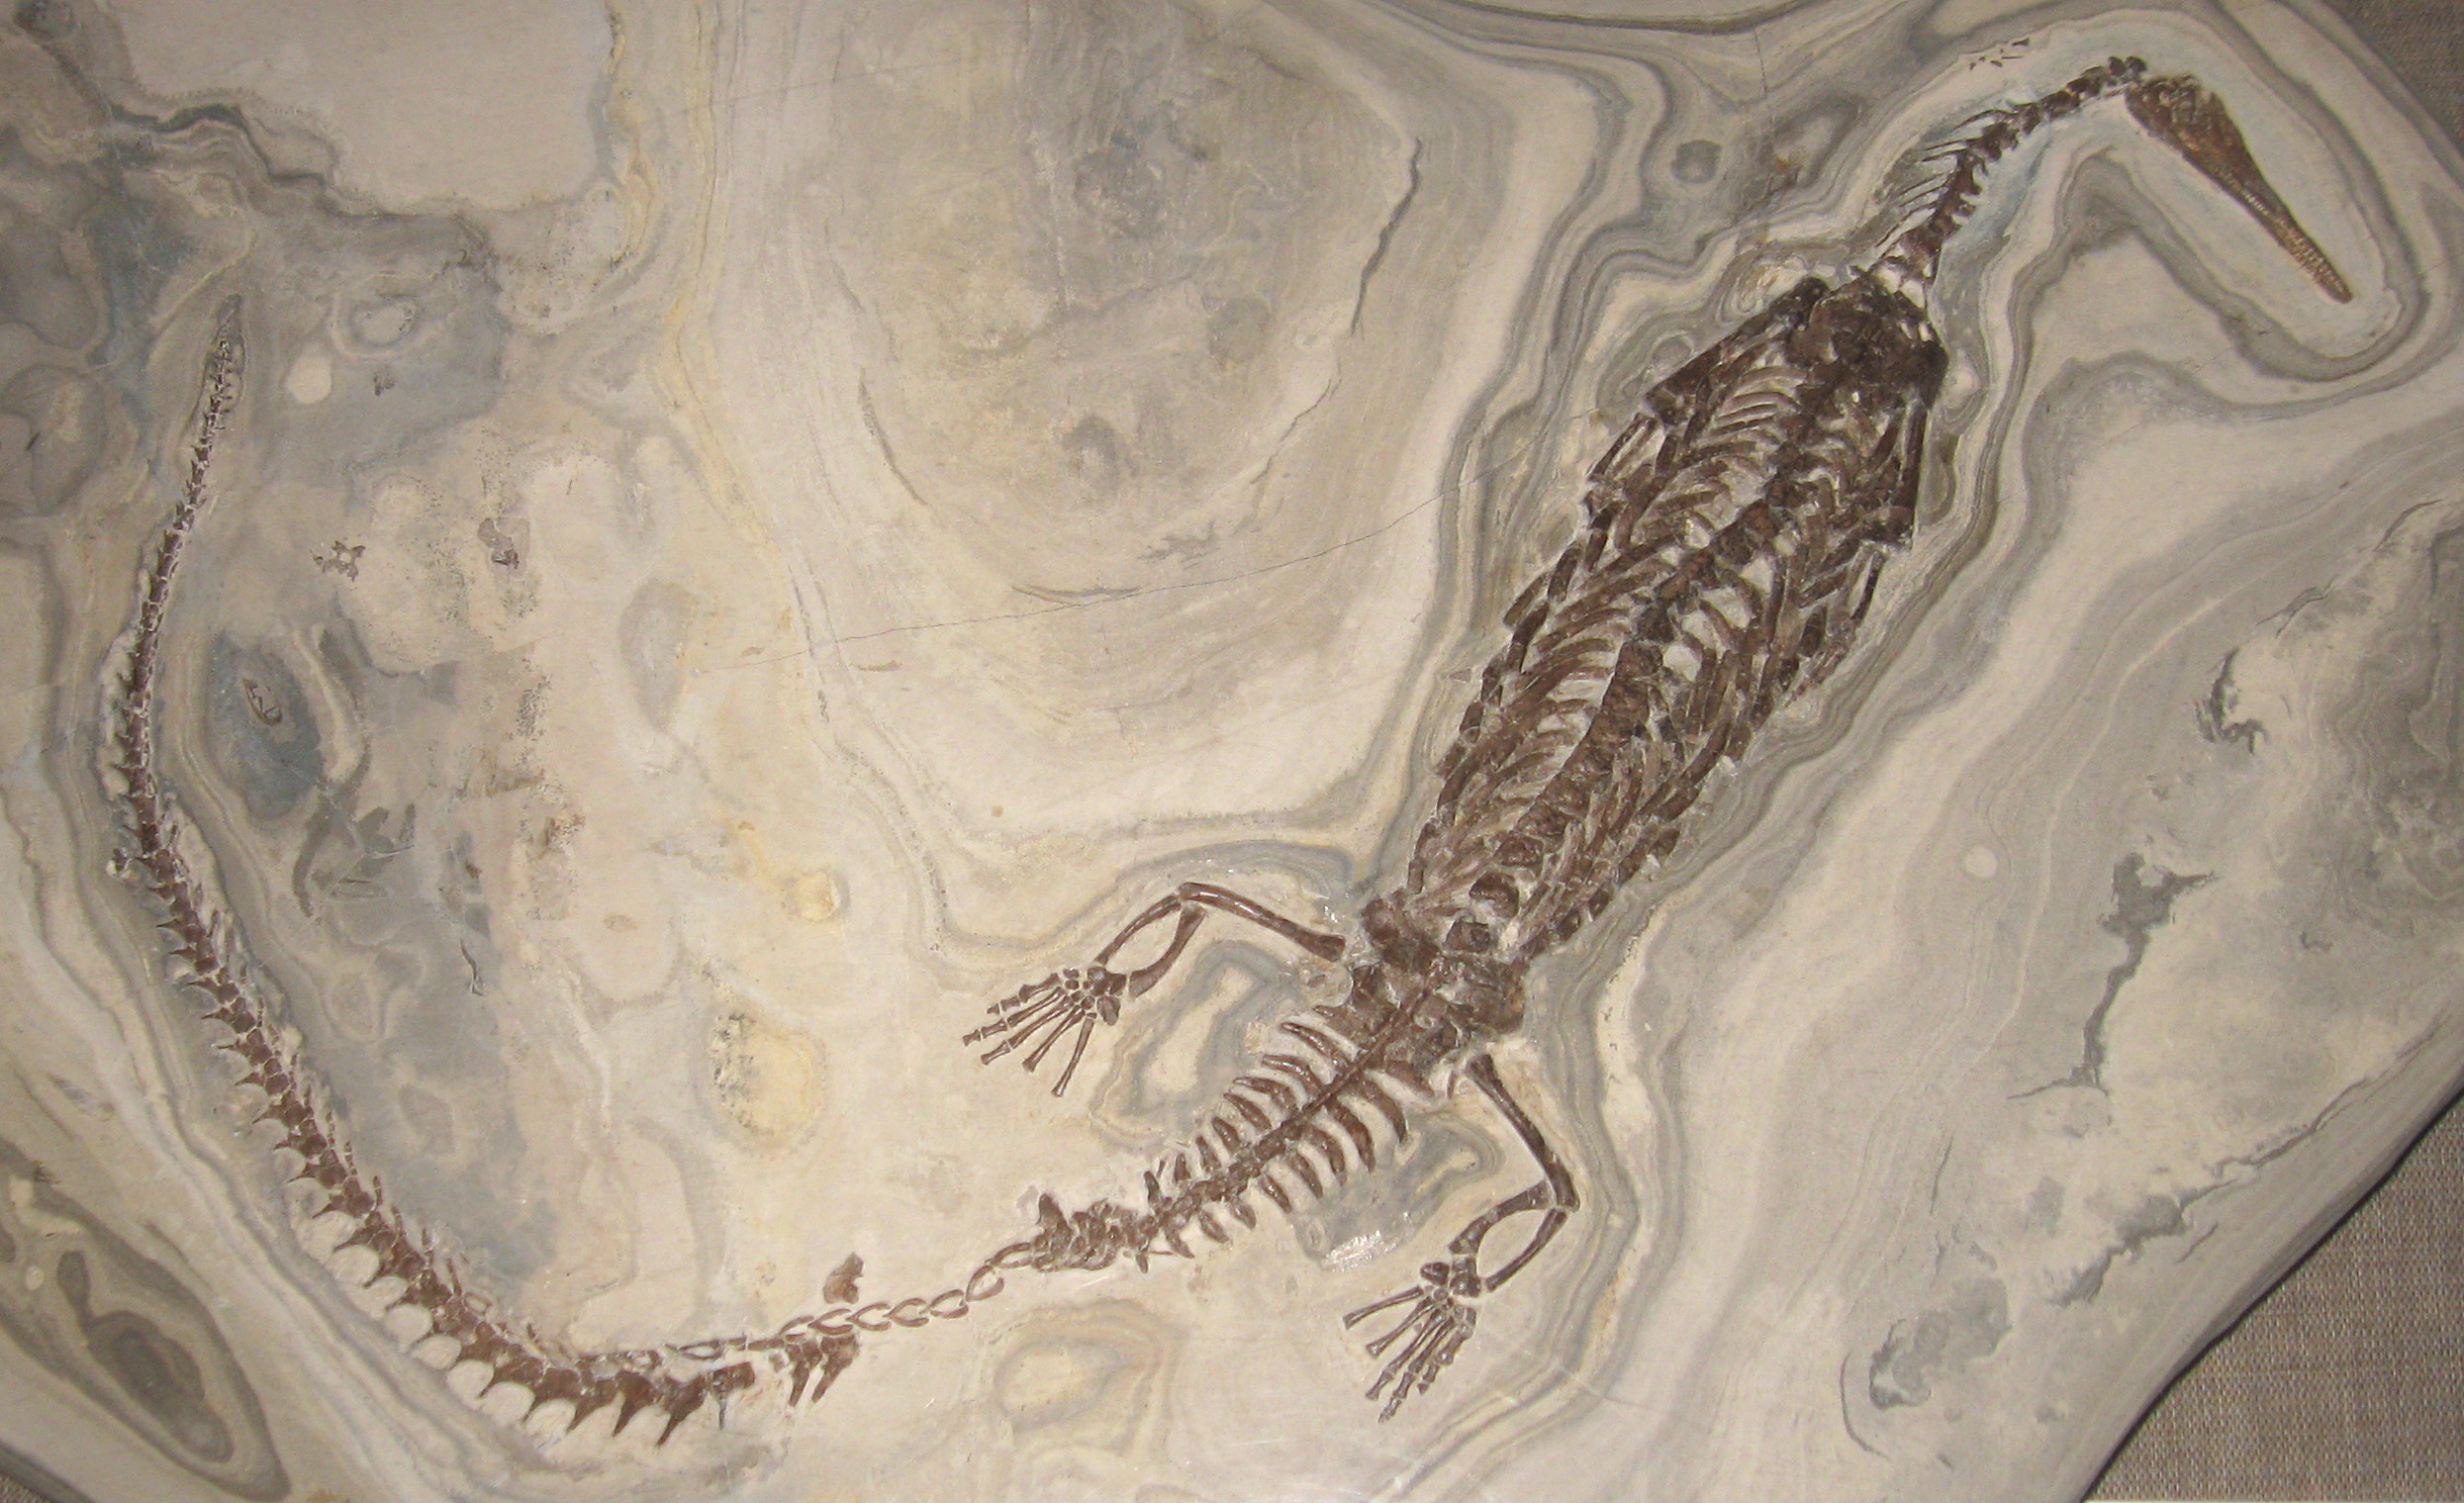 Mesosaurus - Wikipedia